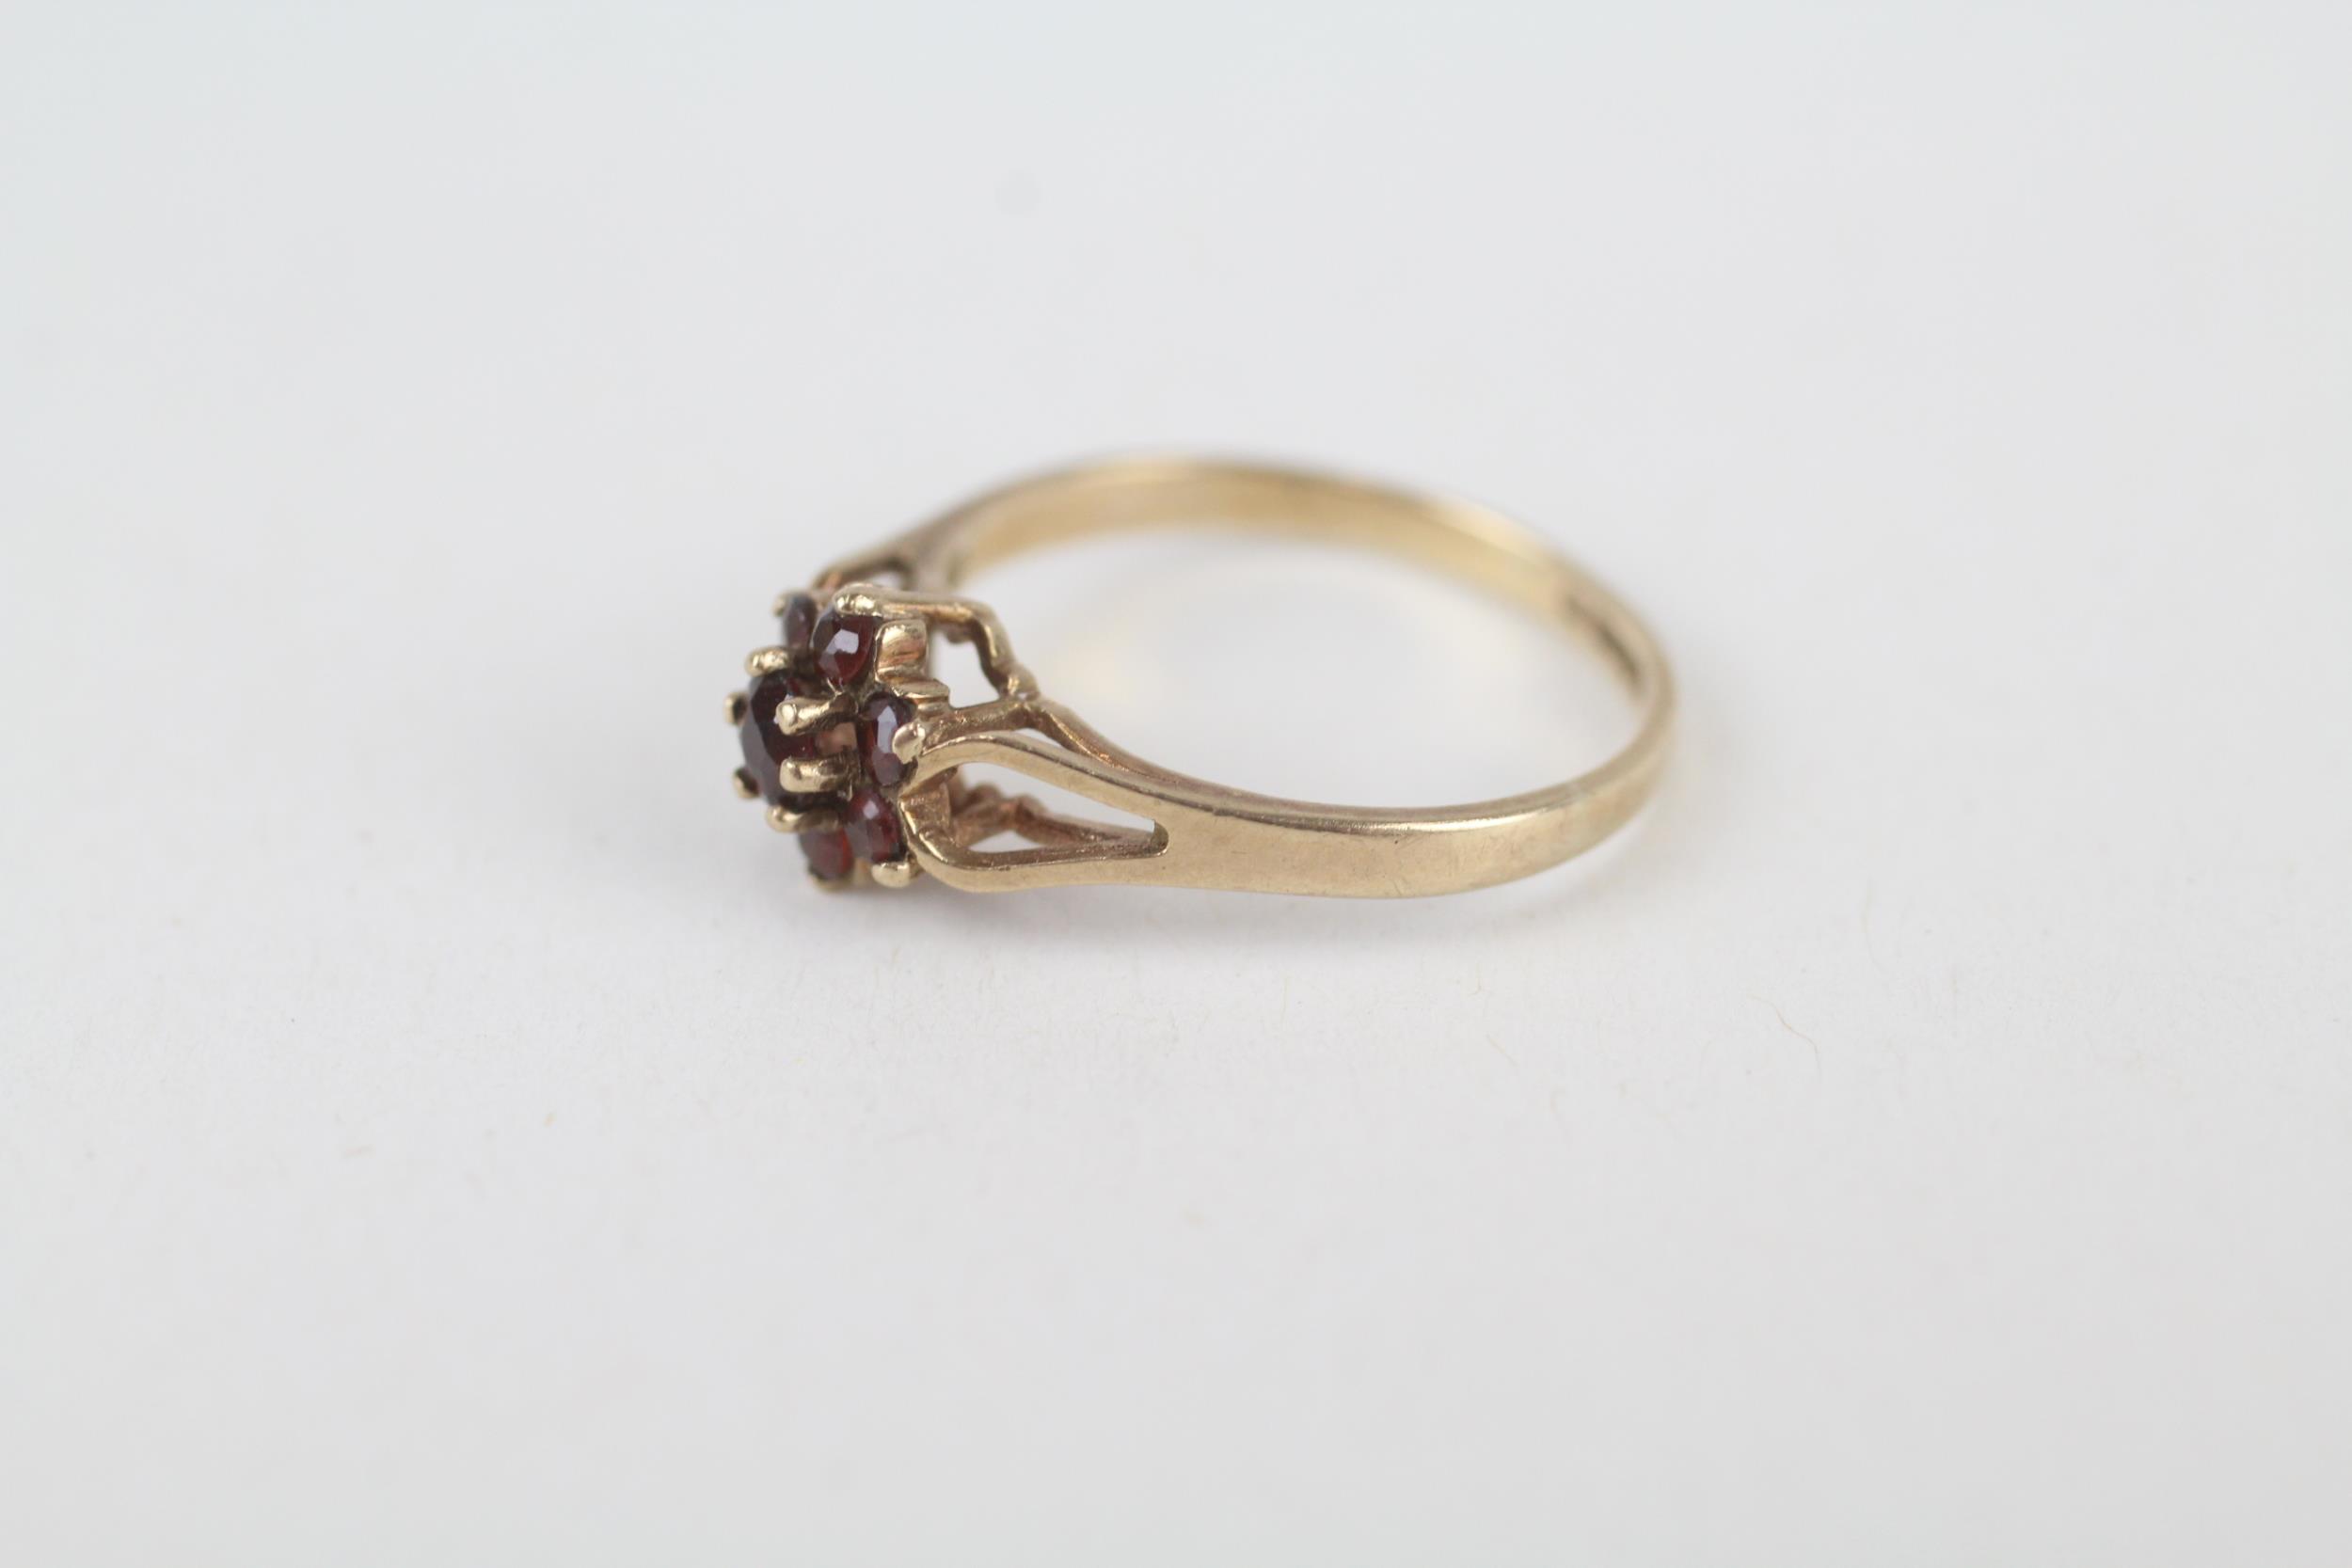 9ct gold garnet floral cluster ring with split shank Size K 1.3 g - Image 4 of 4